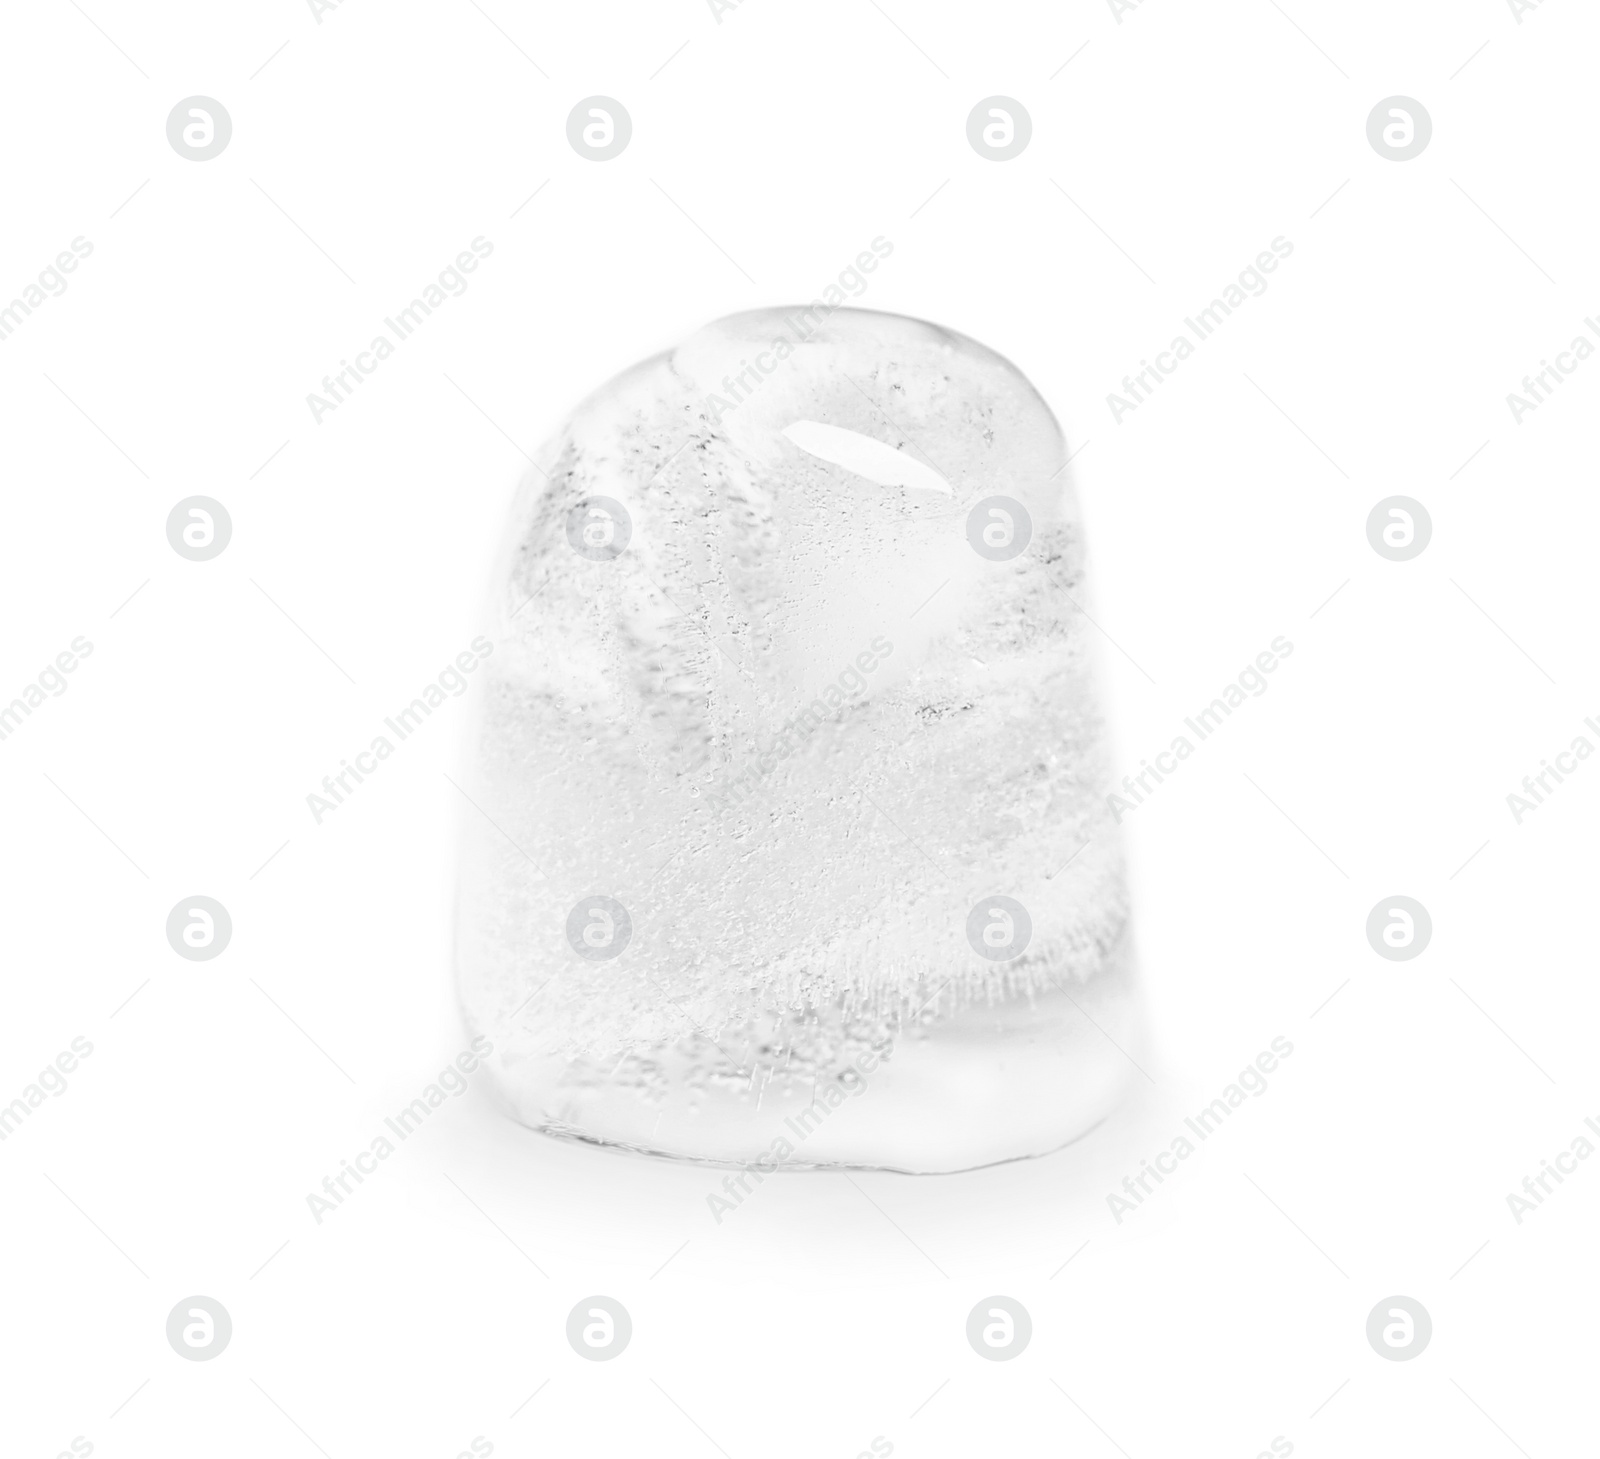 Photo of Melting ice cube on white background. Frozen liquid